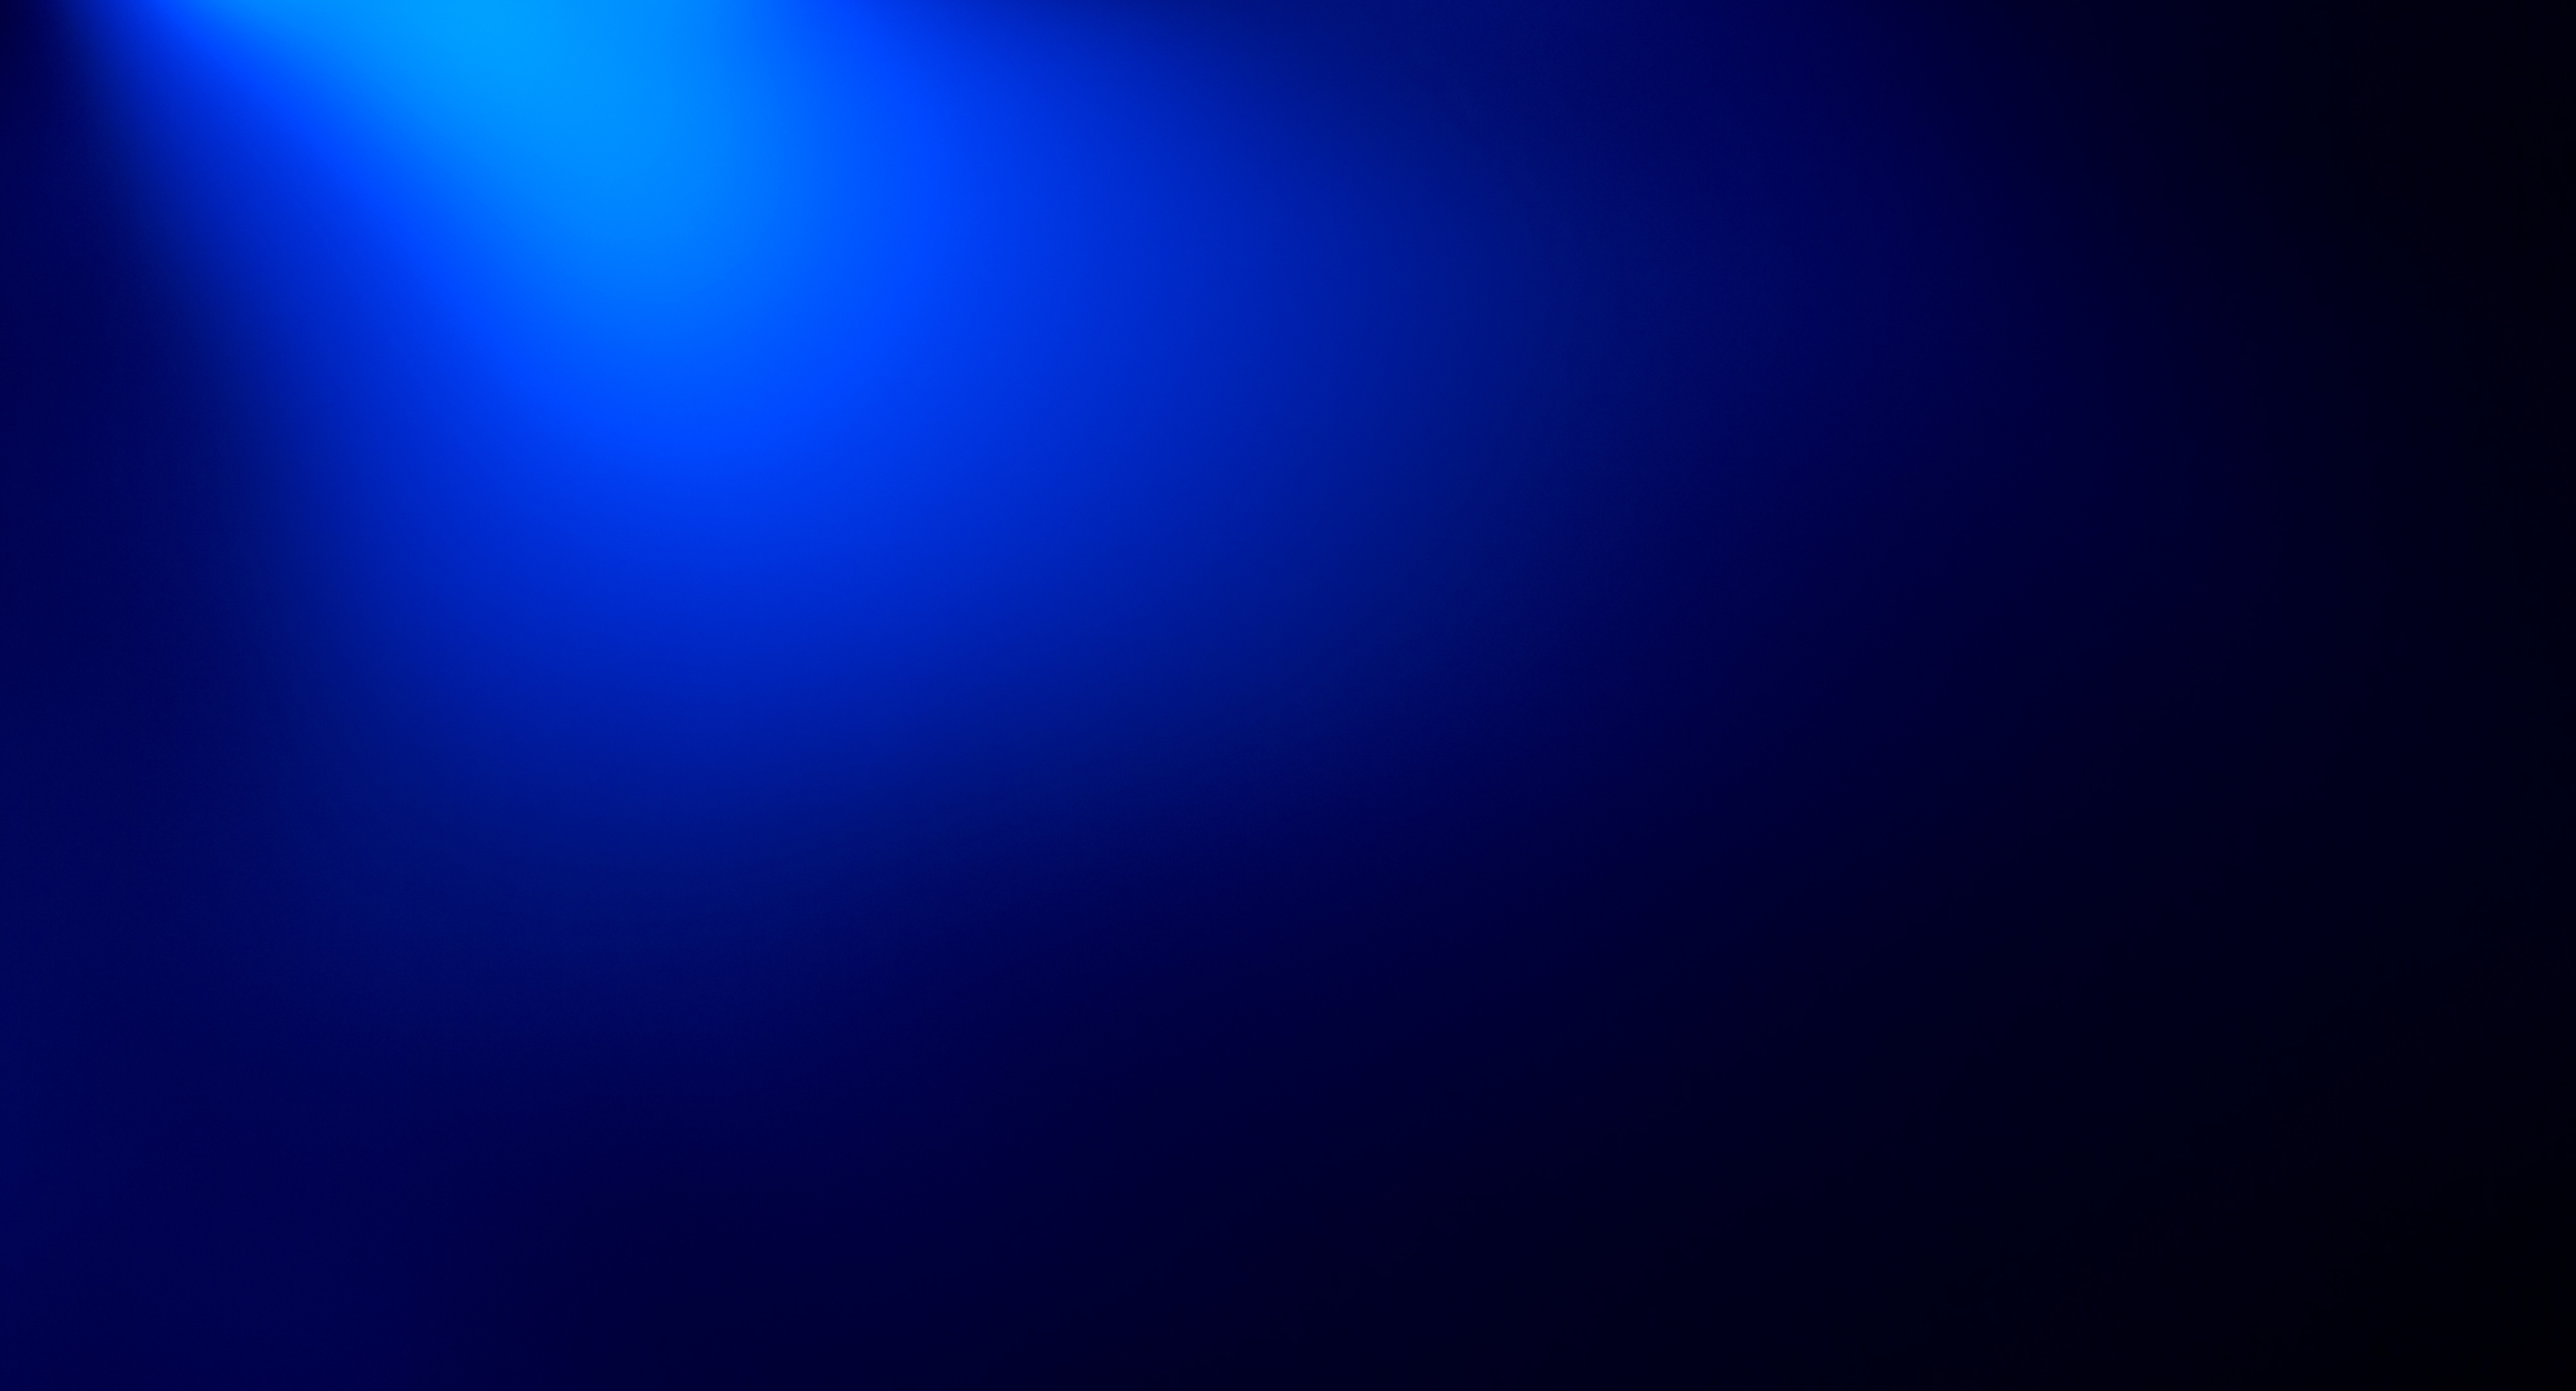 Deep dark blue abstraction background